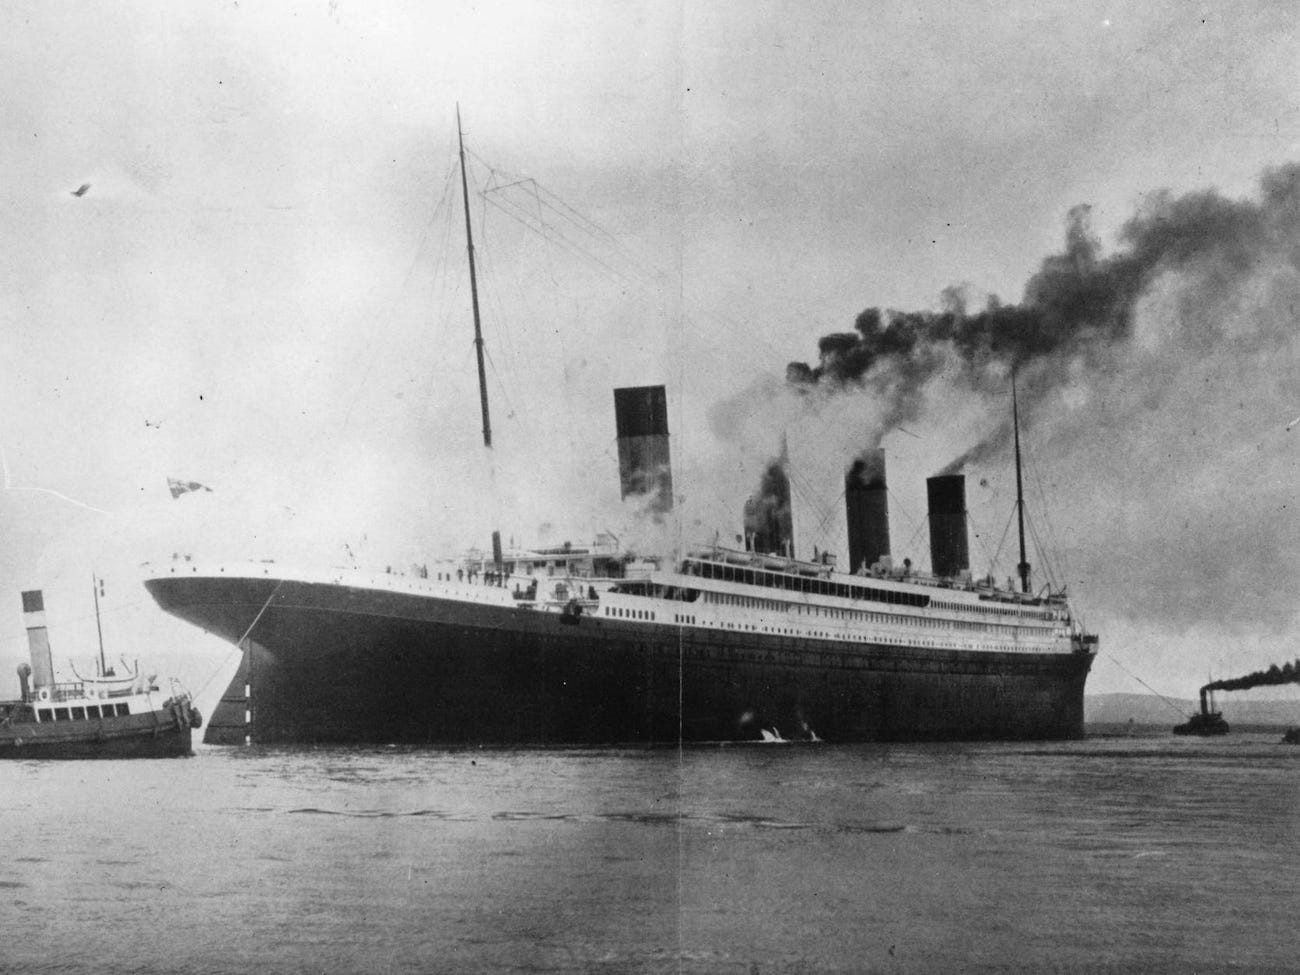 Tại sao xác tàu Titanic vẫn chưa được trục vớt sau 112 năm dù đã xác định được vị trí? Chuyên gia mất 40 năm, dùng công nghệ cao vẫn “bó tay” vì lý do này- Ảnh 1.